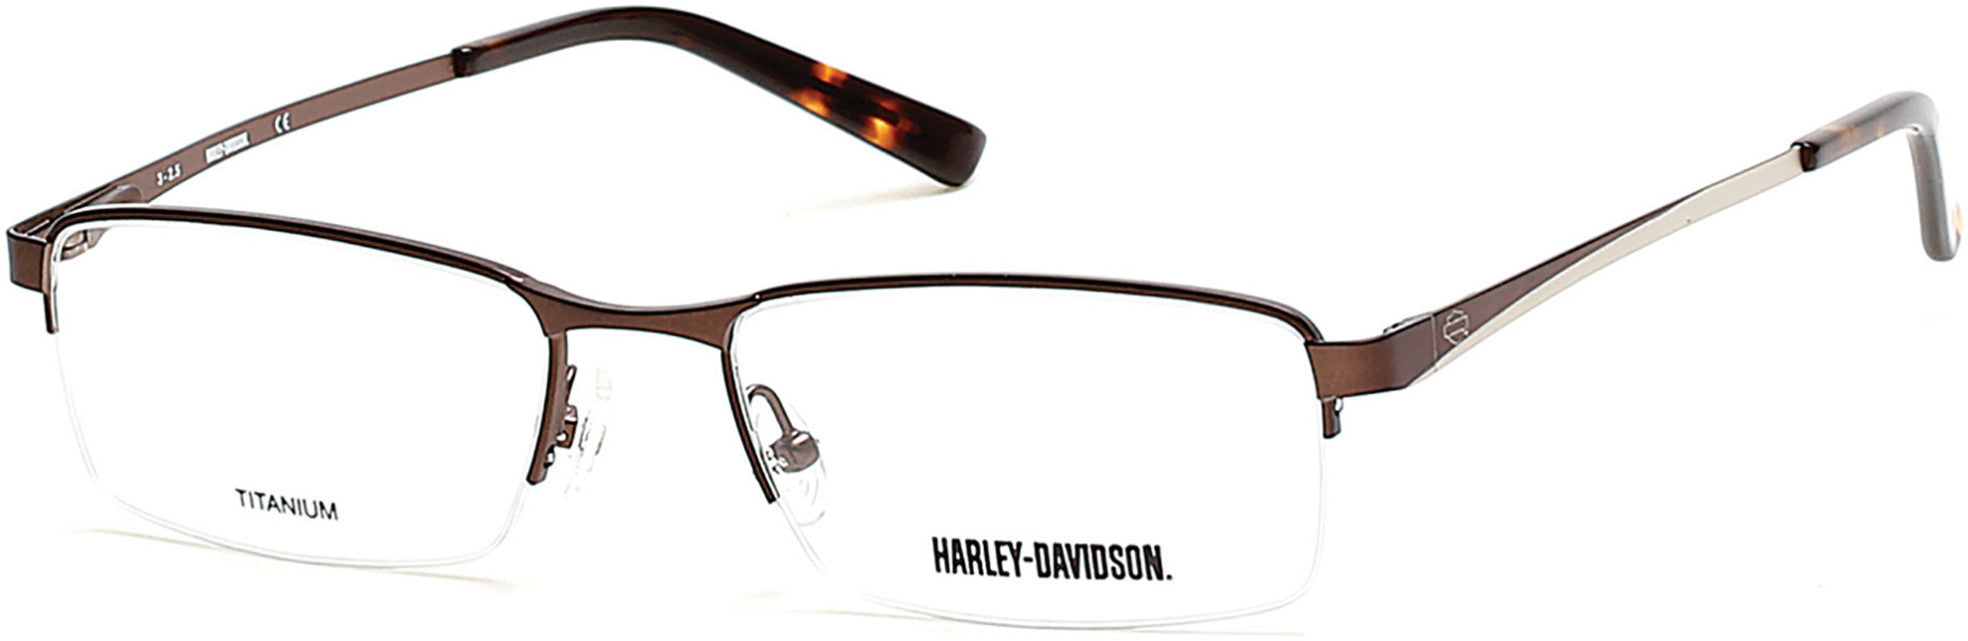 Harley-Davidson HD0748 Rectangular Eyeglasses 049-049 - Matte Dark Brown